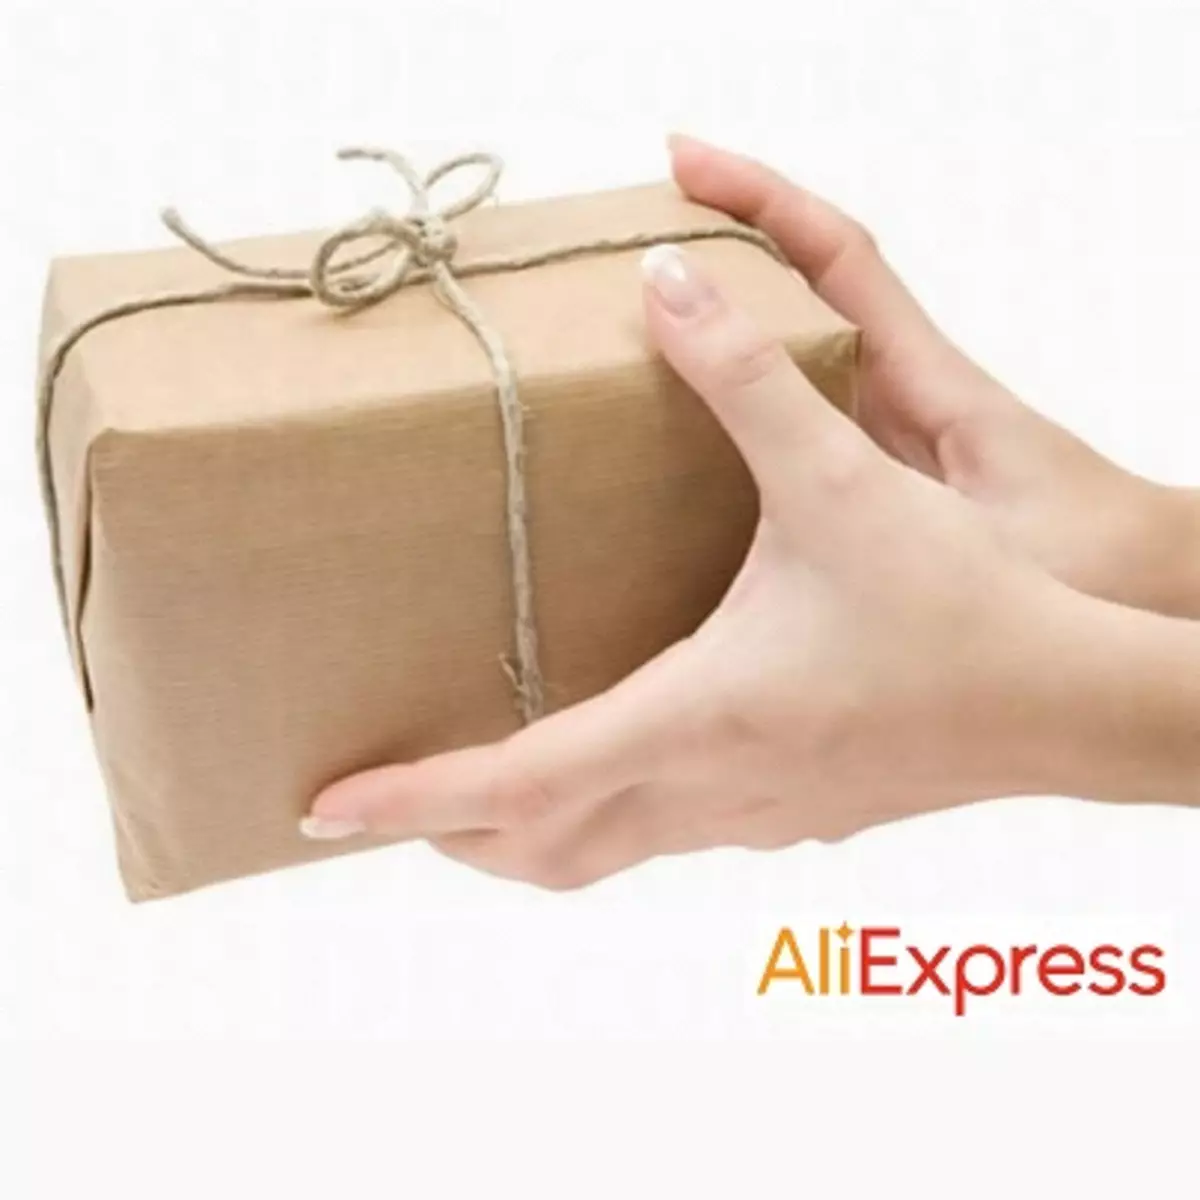 Comment obtenir un colis avec AliExpress